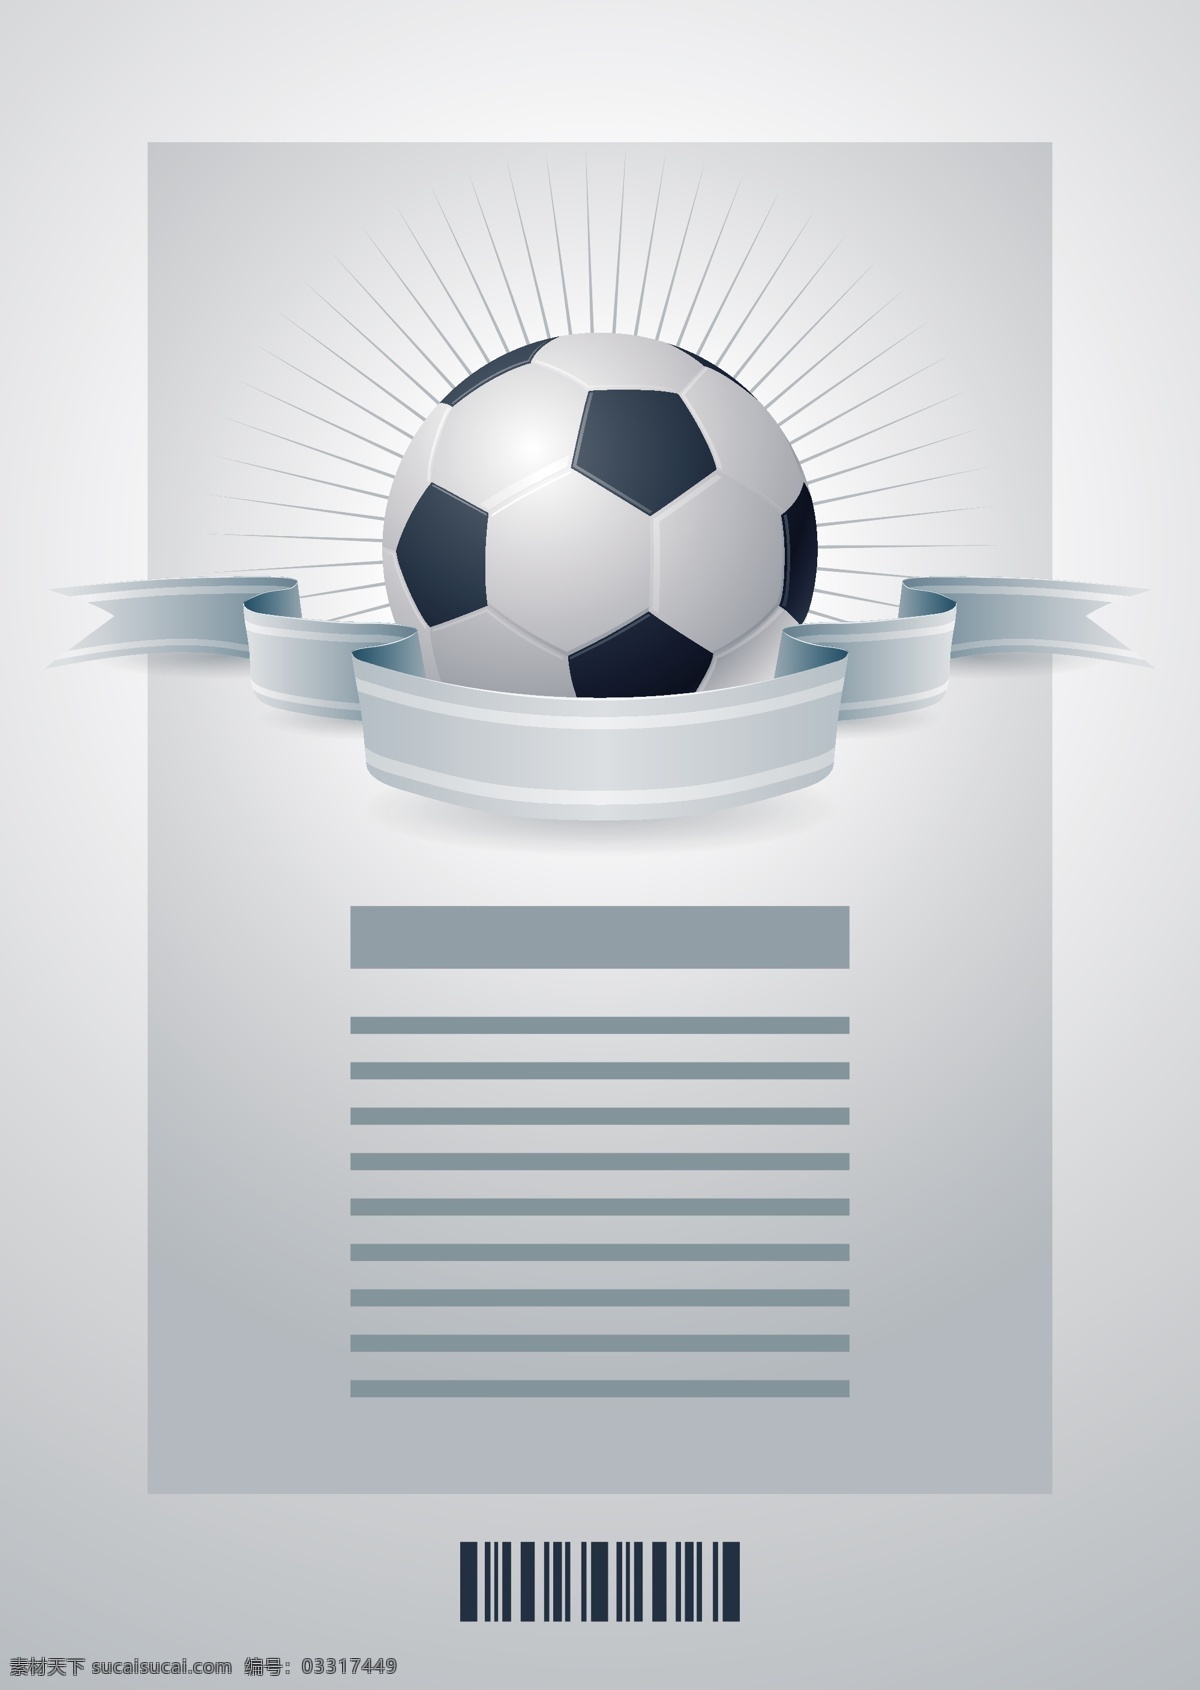 足球 欧洲世界杯 手绘 世界杯 丝带横幅 欧洲杯 亚洲杯 世界杯海报 世界杯背景 足球俱乐部 足球运动 体育运动 矢量 生活百科 体育用品 白色